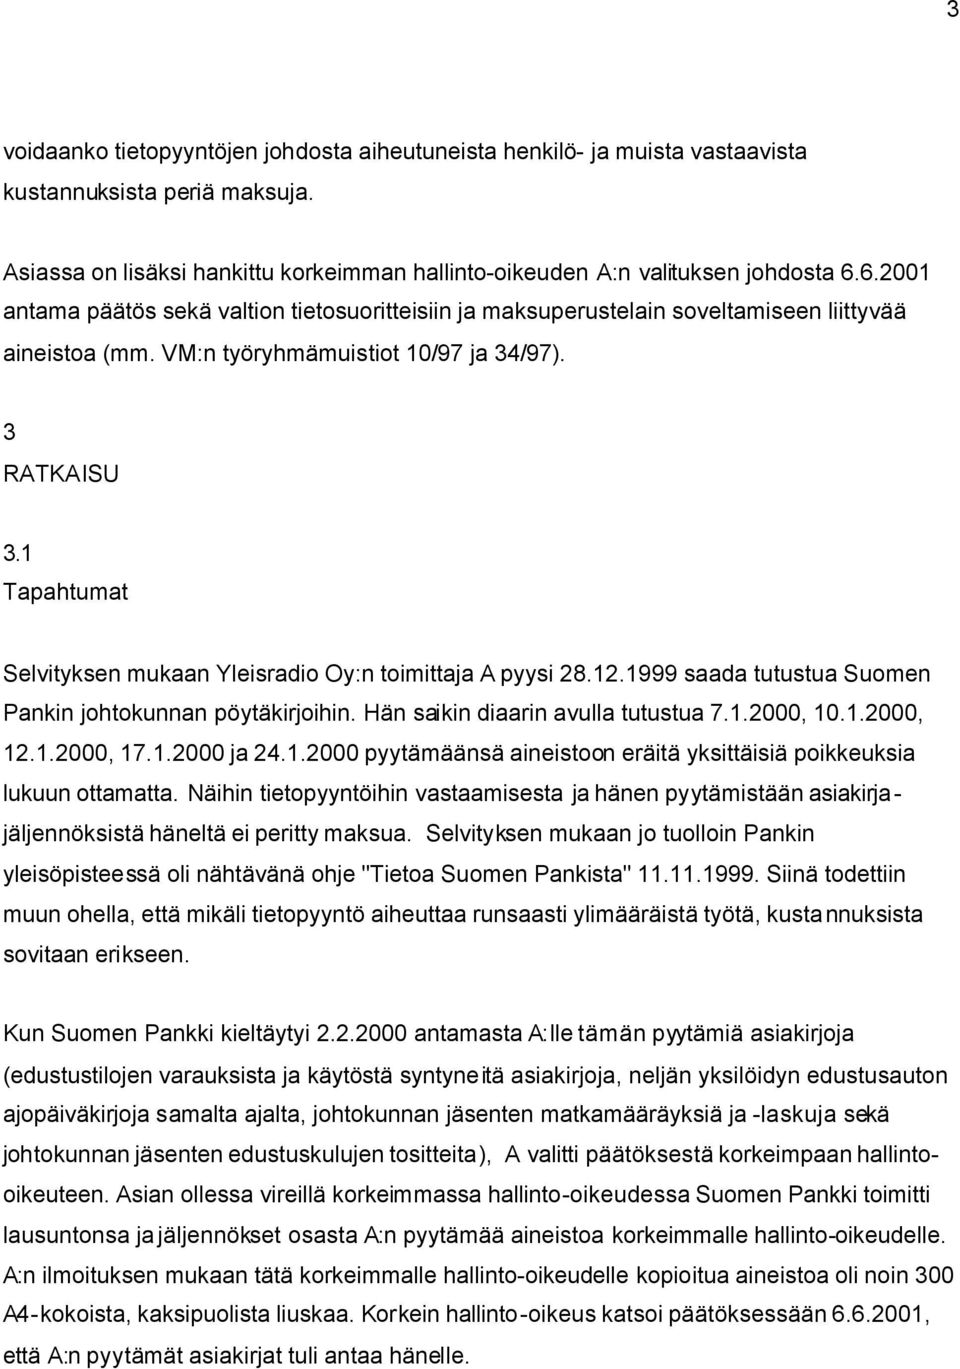 1 Tapahtumat Selvityksen mukaan Yleisradio Oy:n toimittaja A pyysi 28.12.1999 saada tutustua Suomen Pankin johtokunnan pöytäkirjoihin. Hän saikin diaarin avulla tutustua 7.1.2000, 10.1.2000, 12.1.2000, 17.